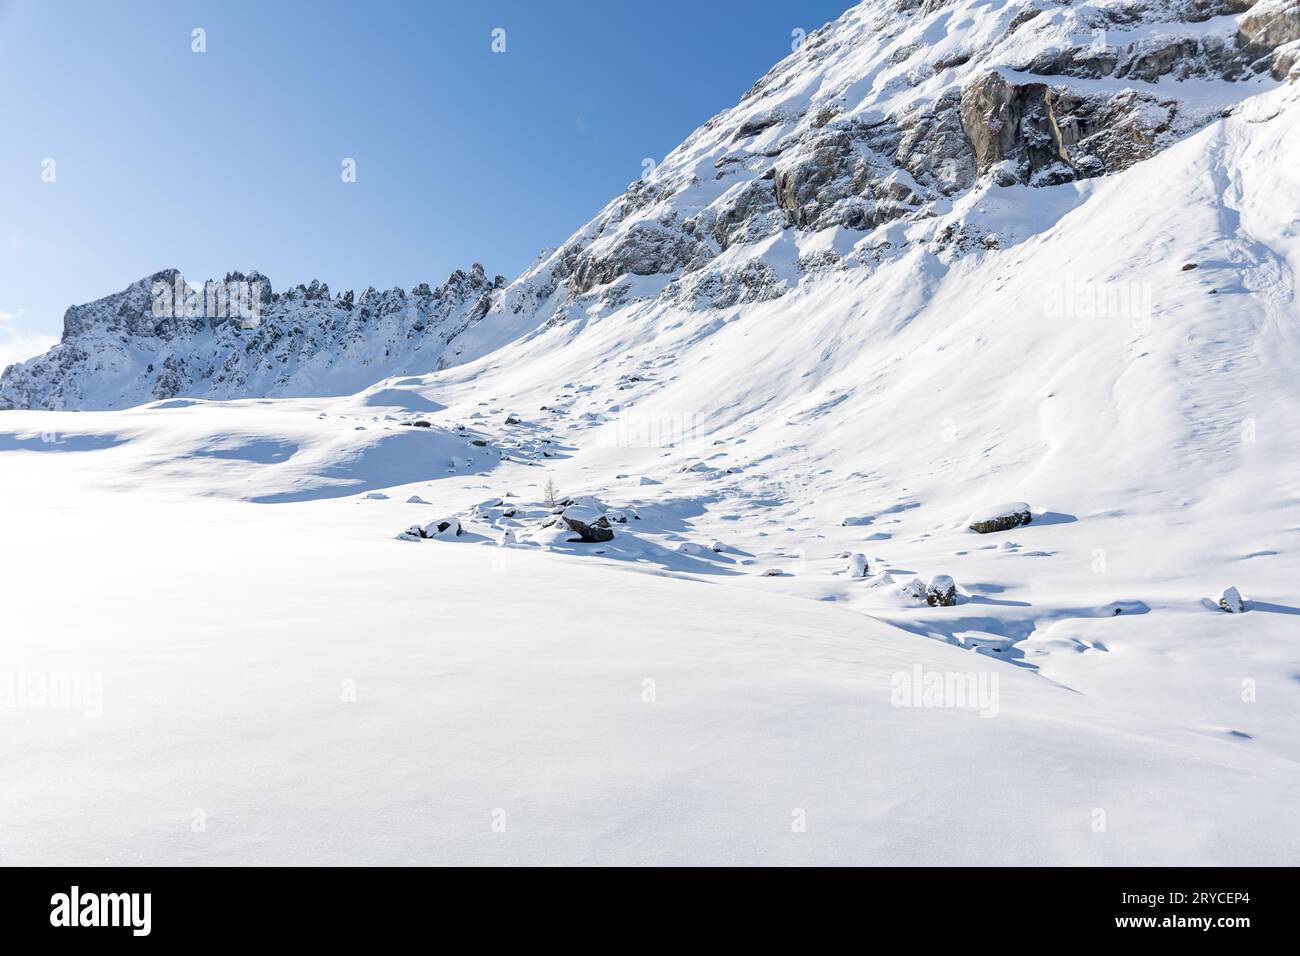 Invierno Italia Montañas Dolomitas cubiertas de nieve. Foto de alta calidad Foto de stock